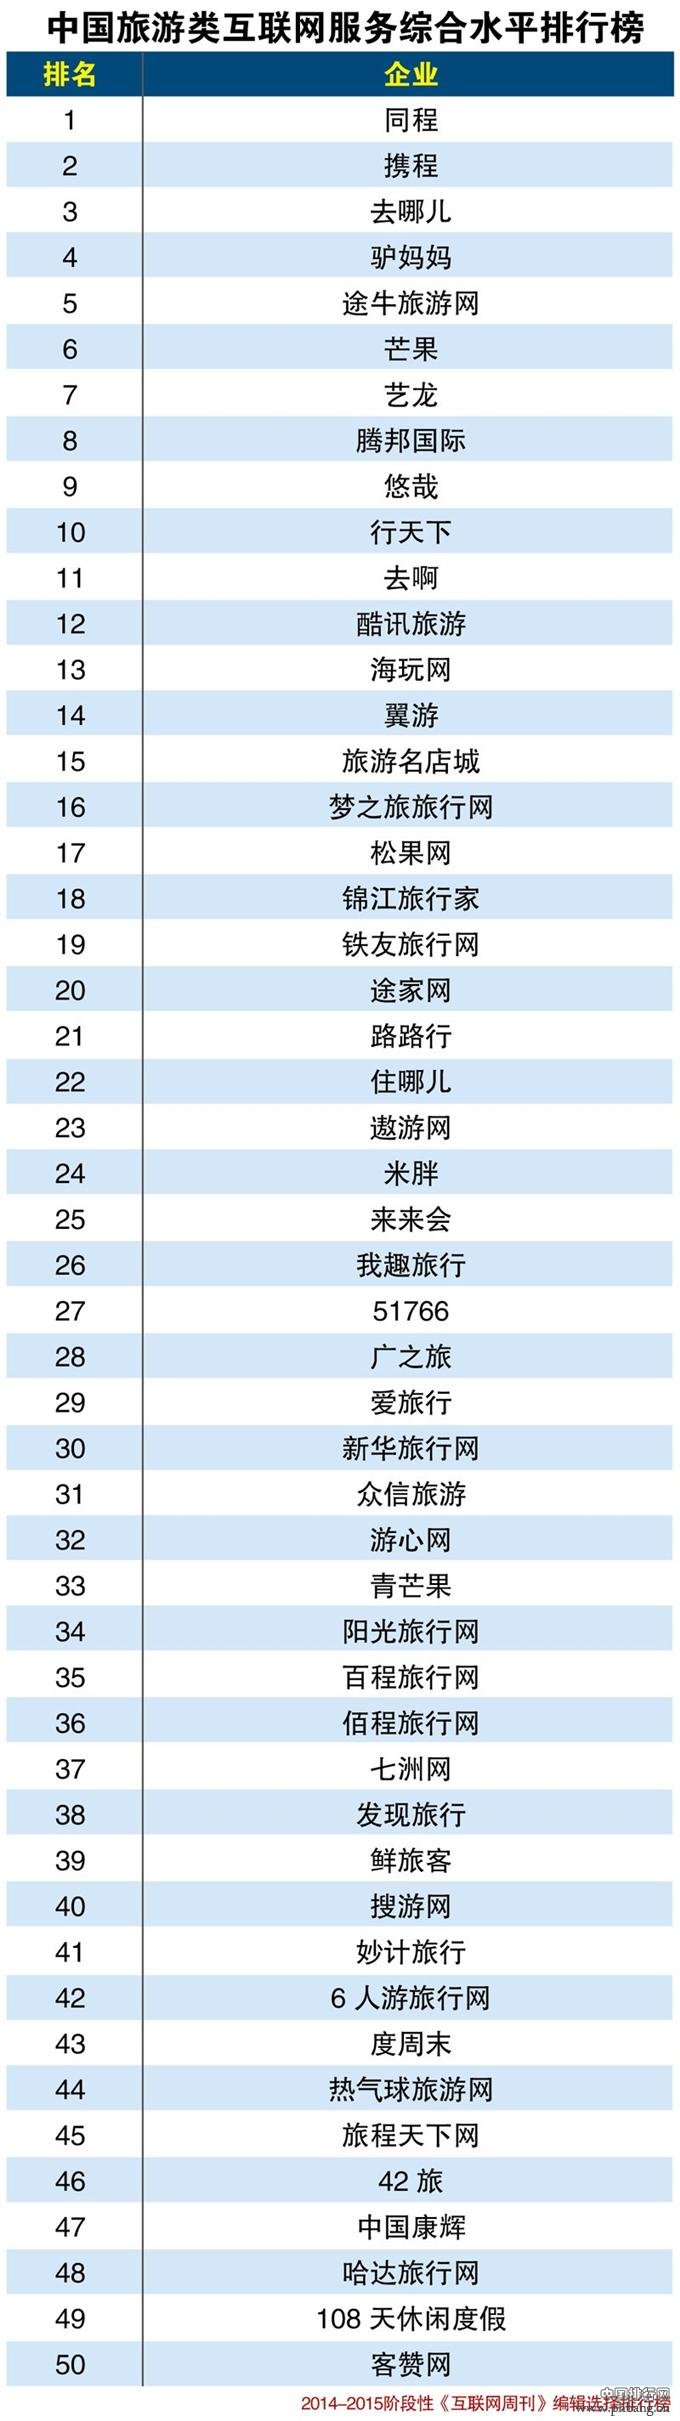 2015年中国旅游类互联网服务综合水平排行榜TOP50